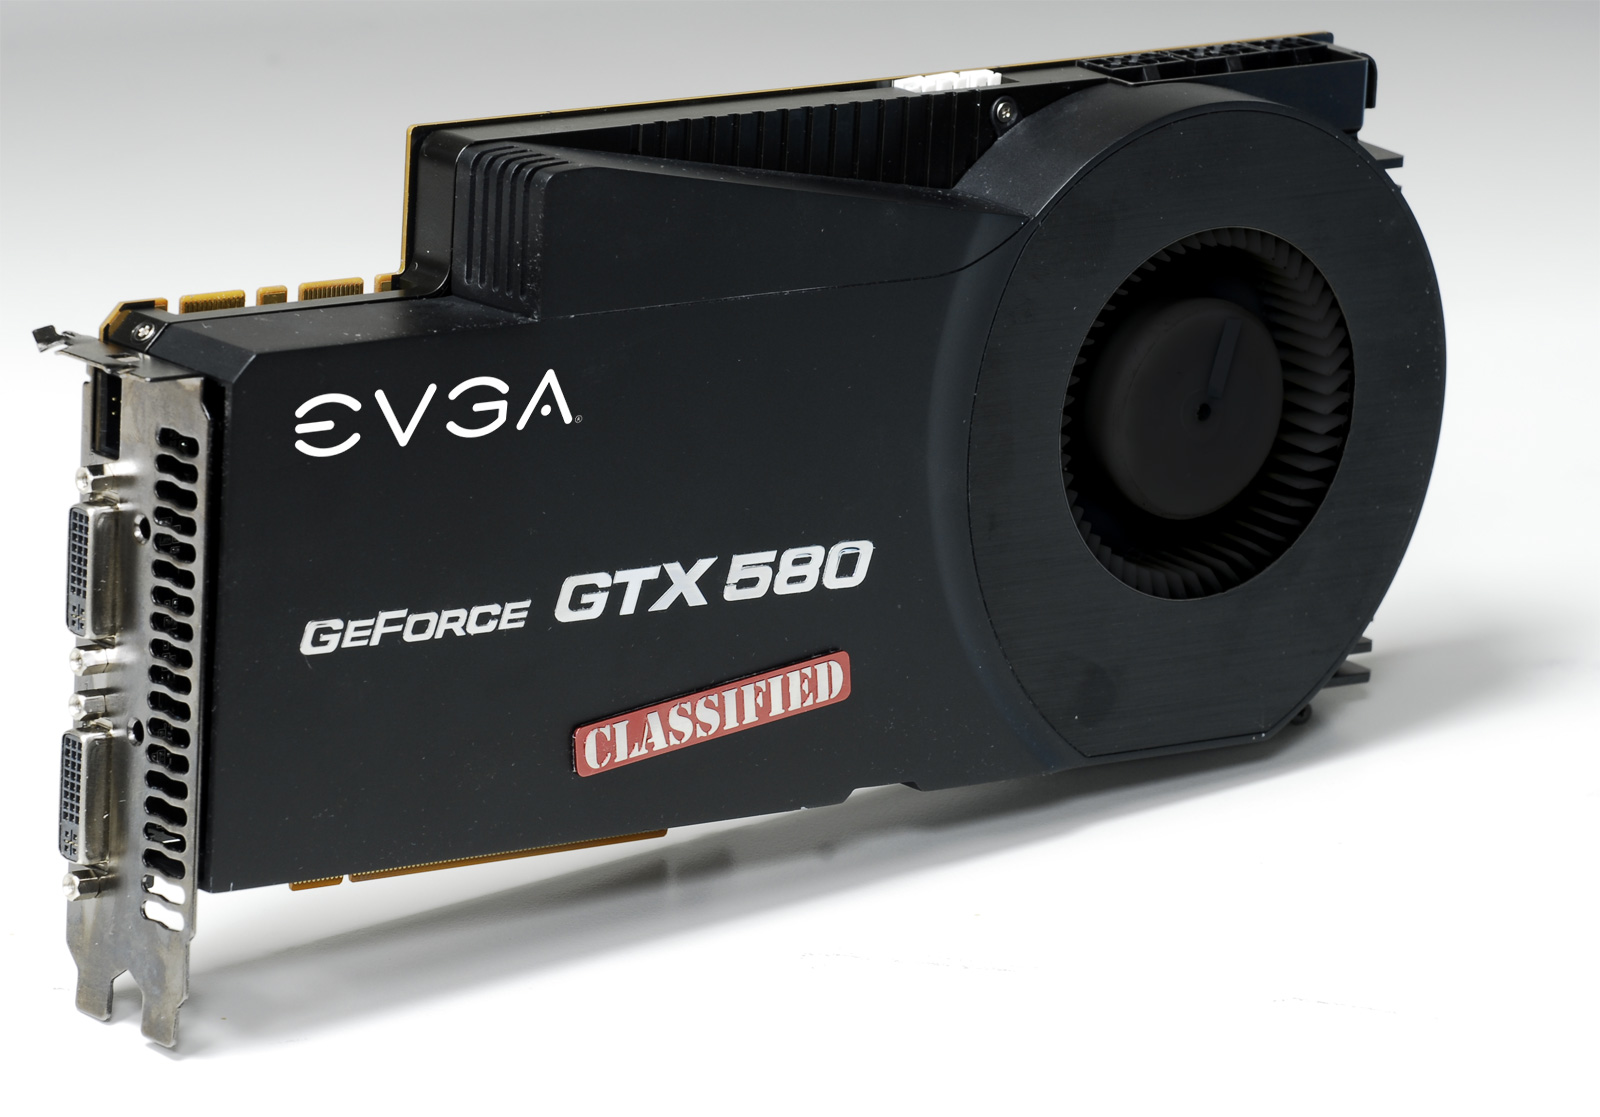 Immagine pubblicata in relazione al seguente contenuto: EVGA mostra la video card GeForce GTX 580 Classified | Nome immagine: news15341_1.jpg